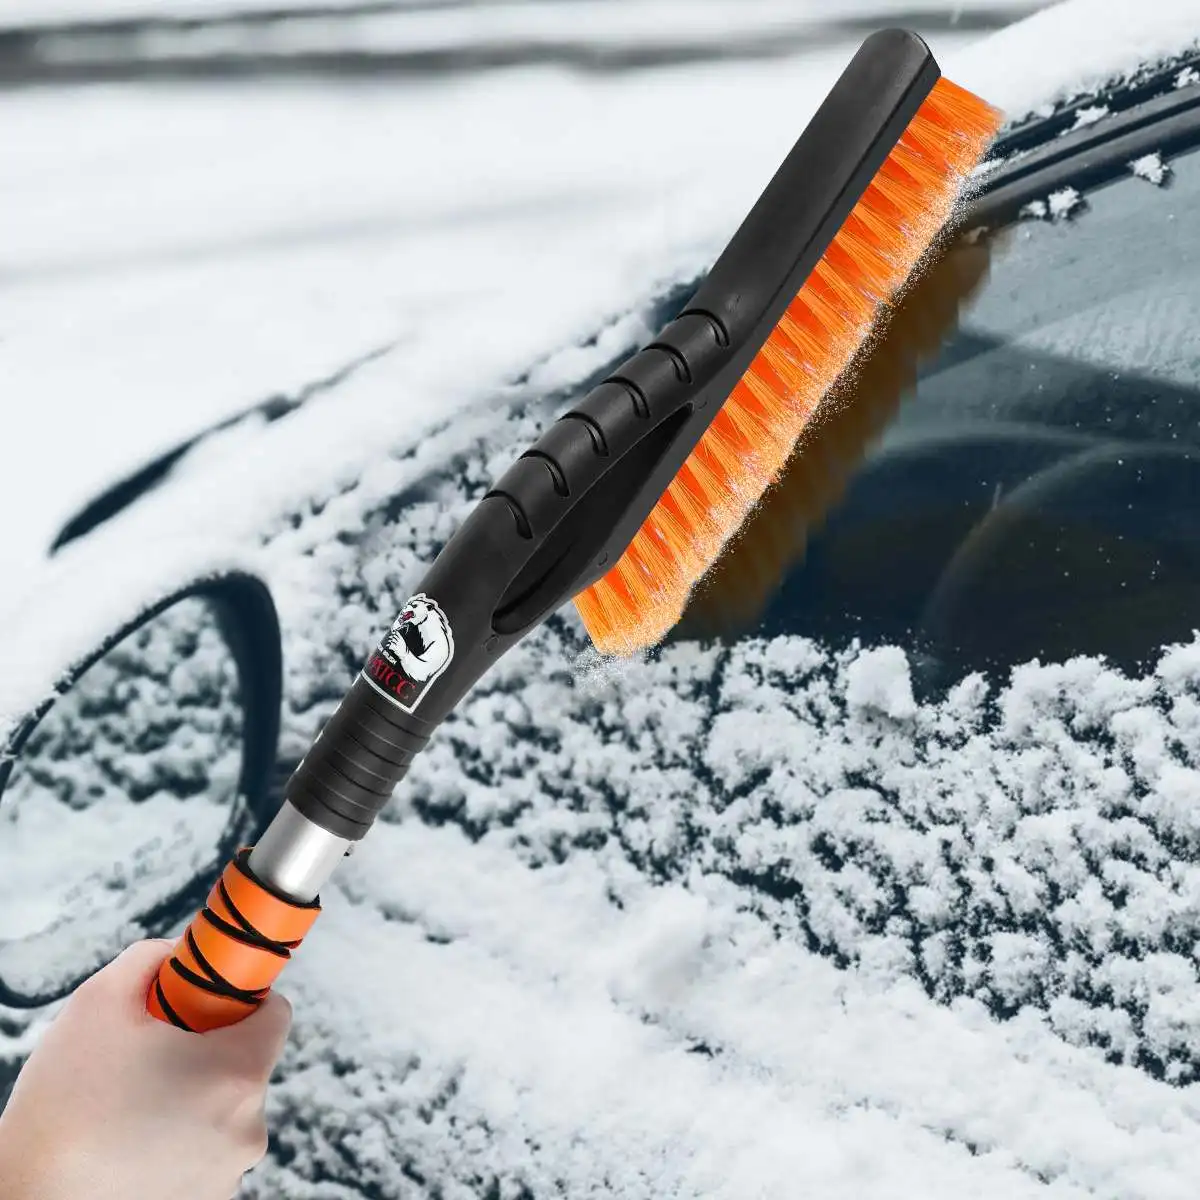 

Скребок для снега и лобового стекла автомобиля, щетка для удаления снега и льда на лобовом стекле, быстрая очистка